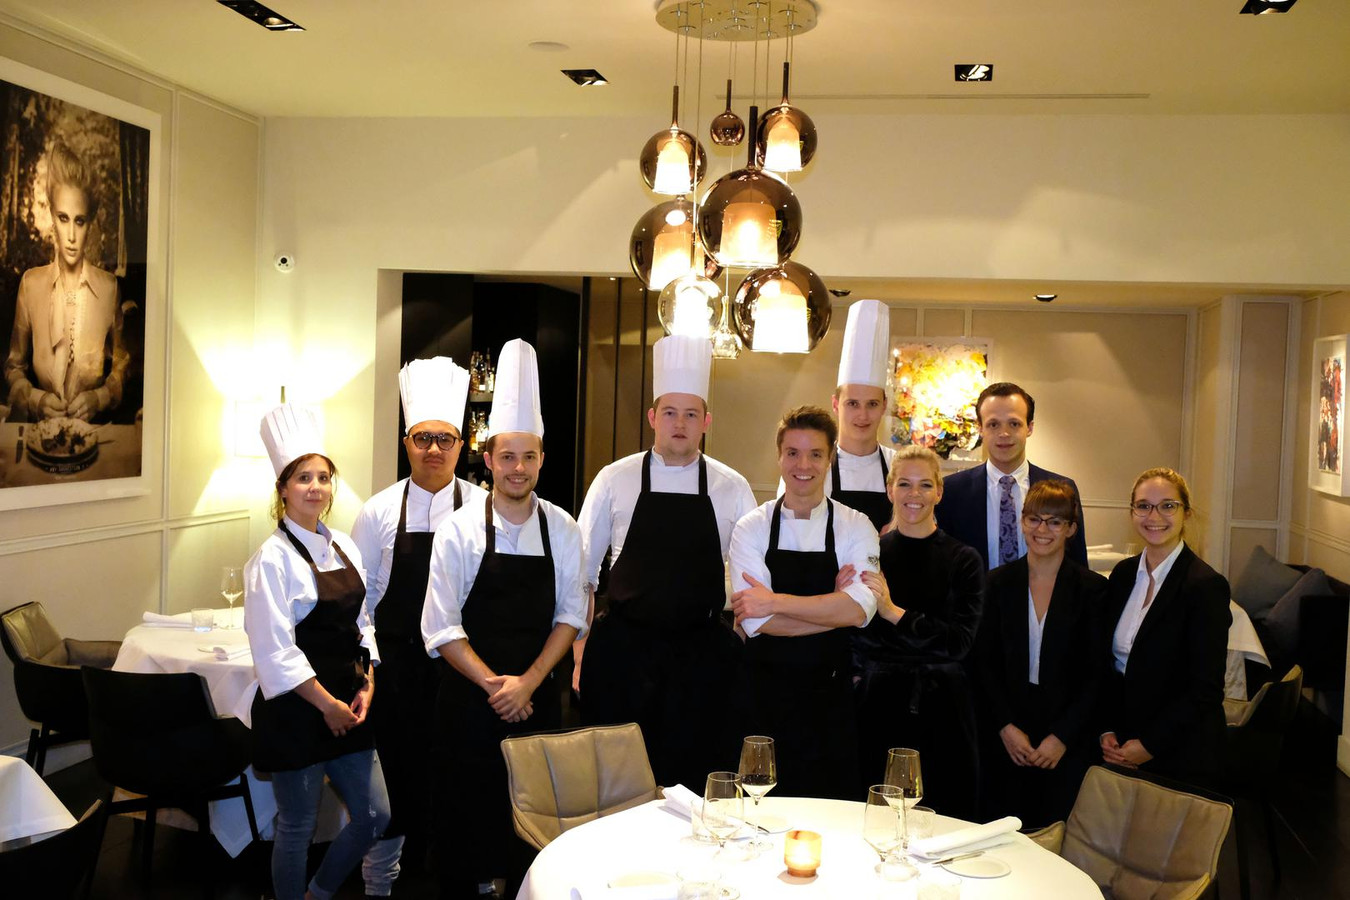 Thierry Theys du restaurant “Nuance” à Duffel (province d’Anvers) s’est vu décerner lundi le titre de “Chef de l’année” 2022 par Gault&Millau.